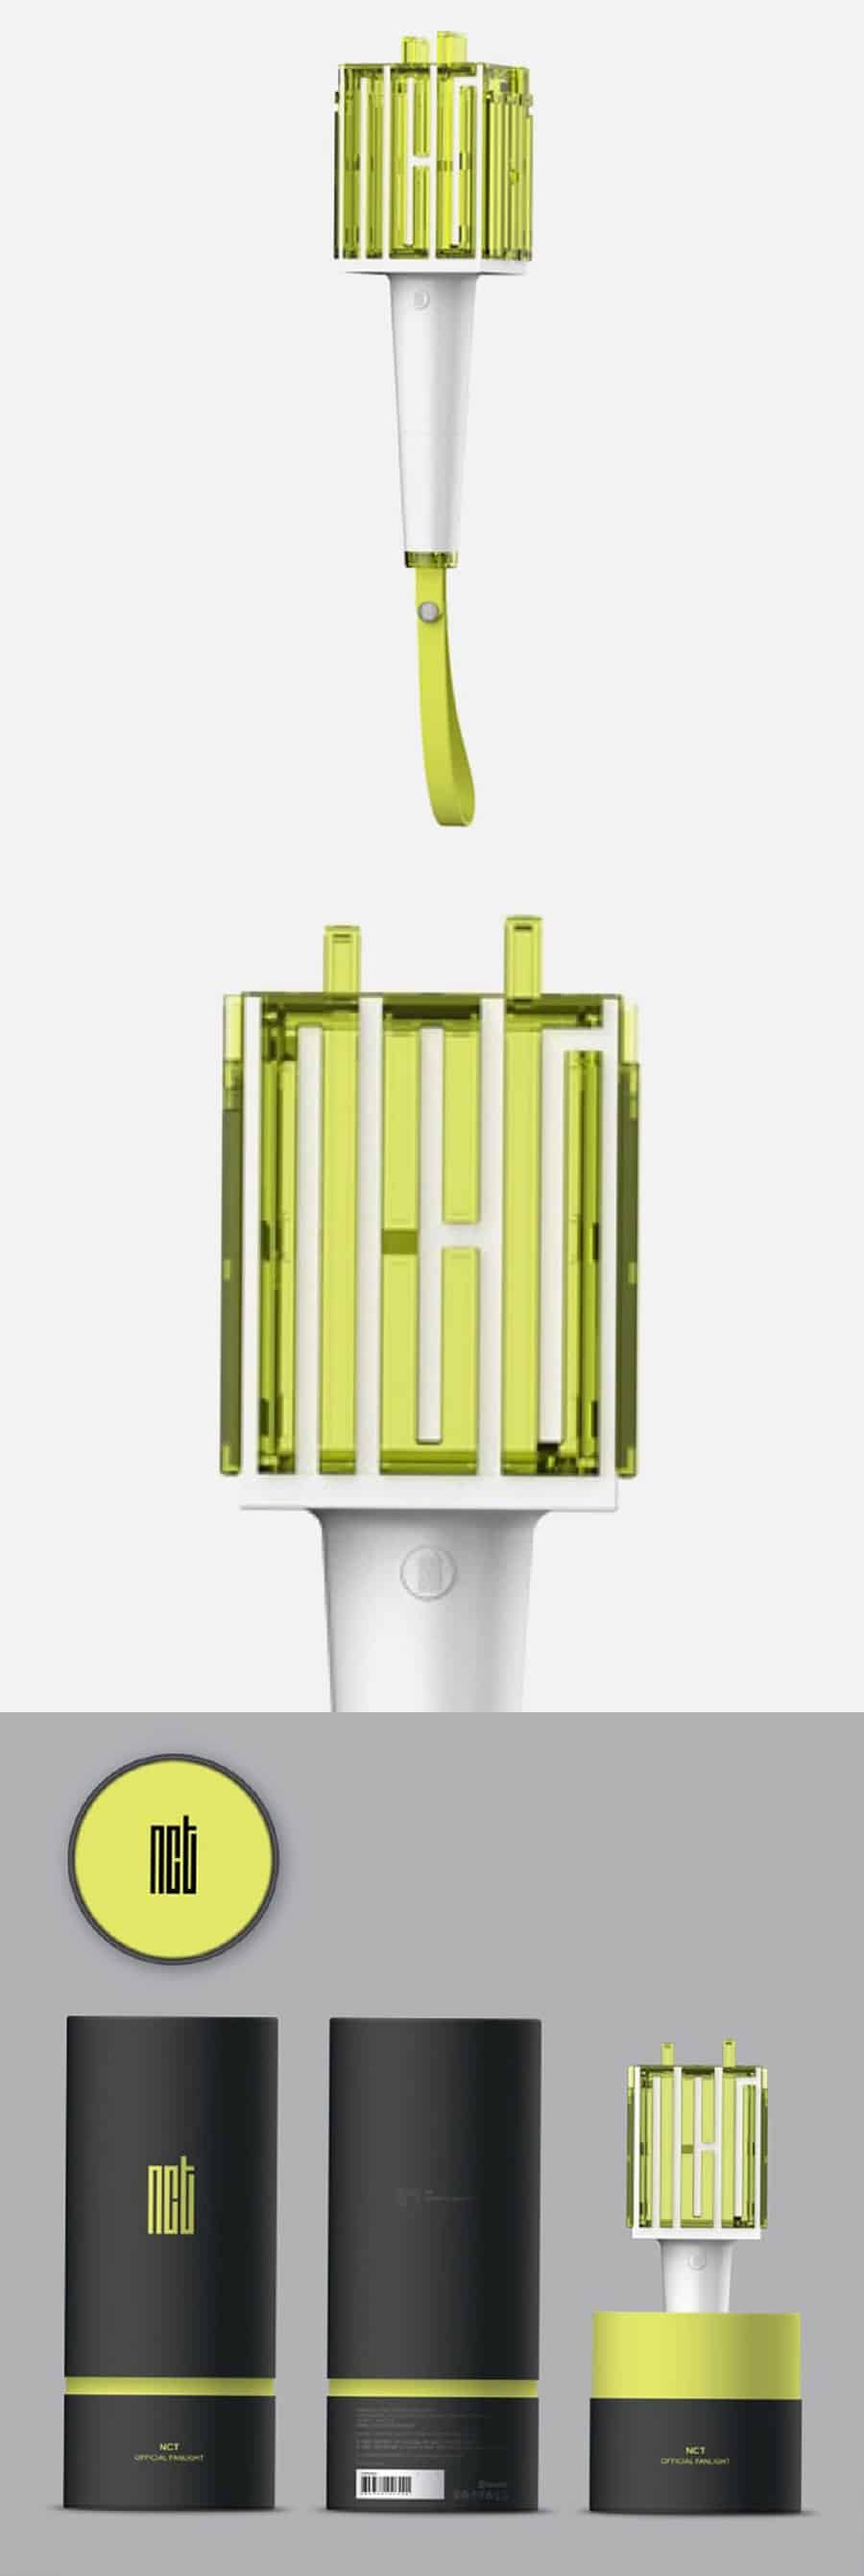 nct-official-fan-light-stick-wholesale